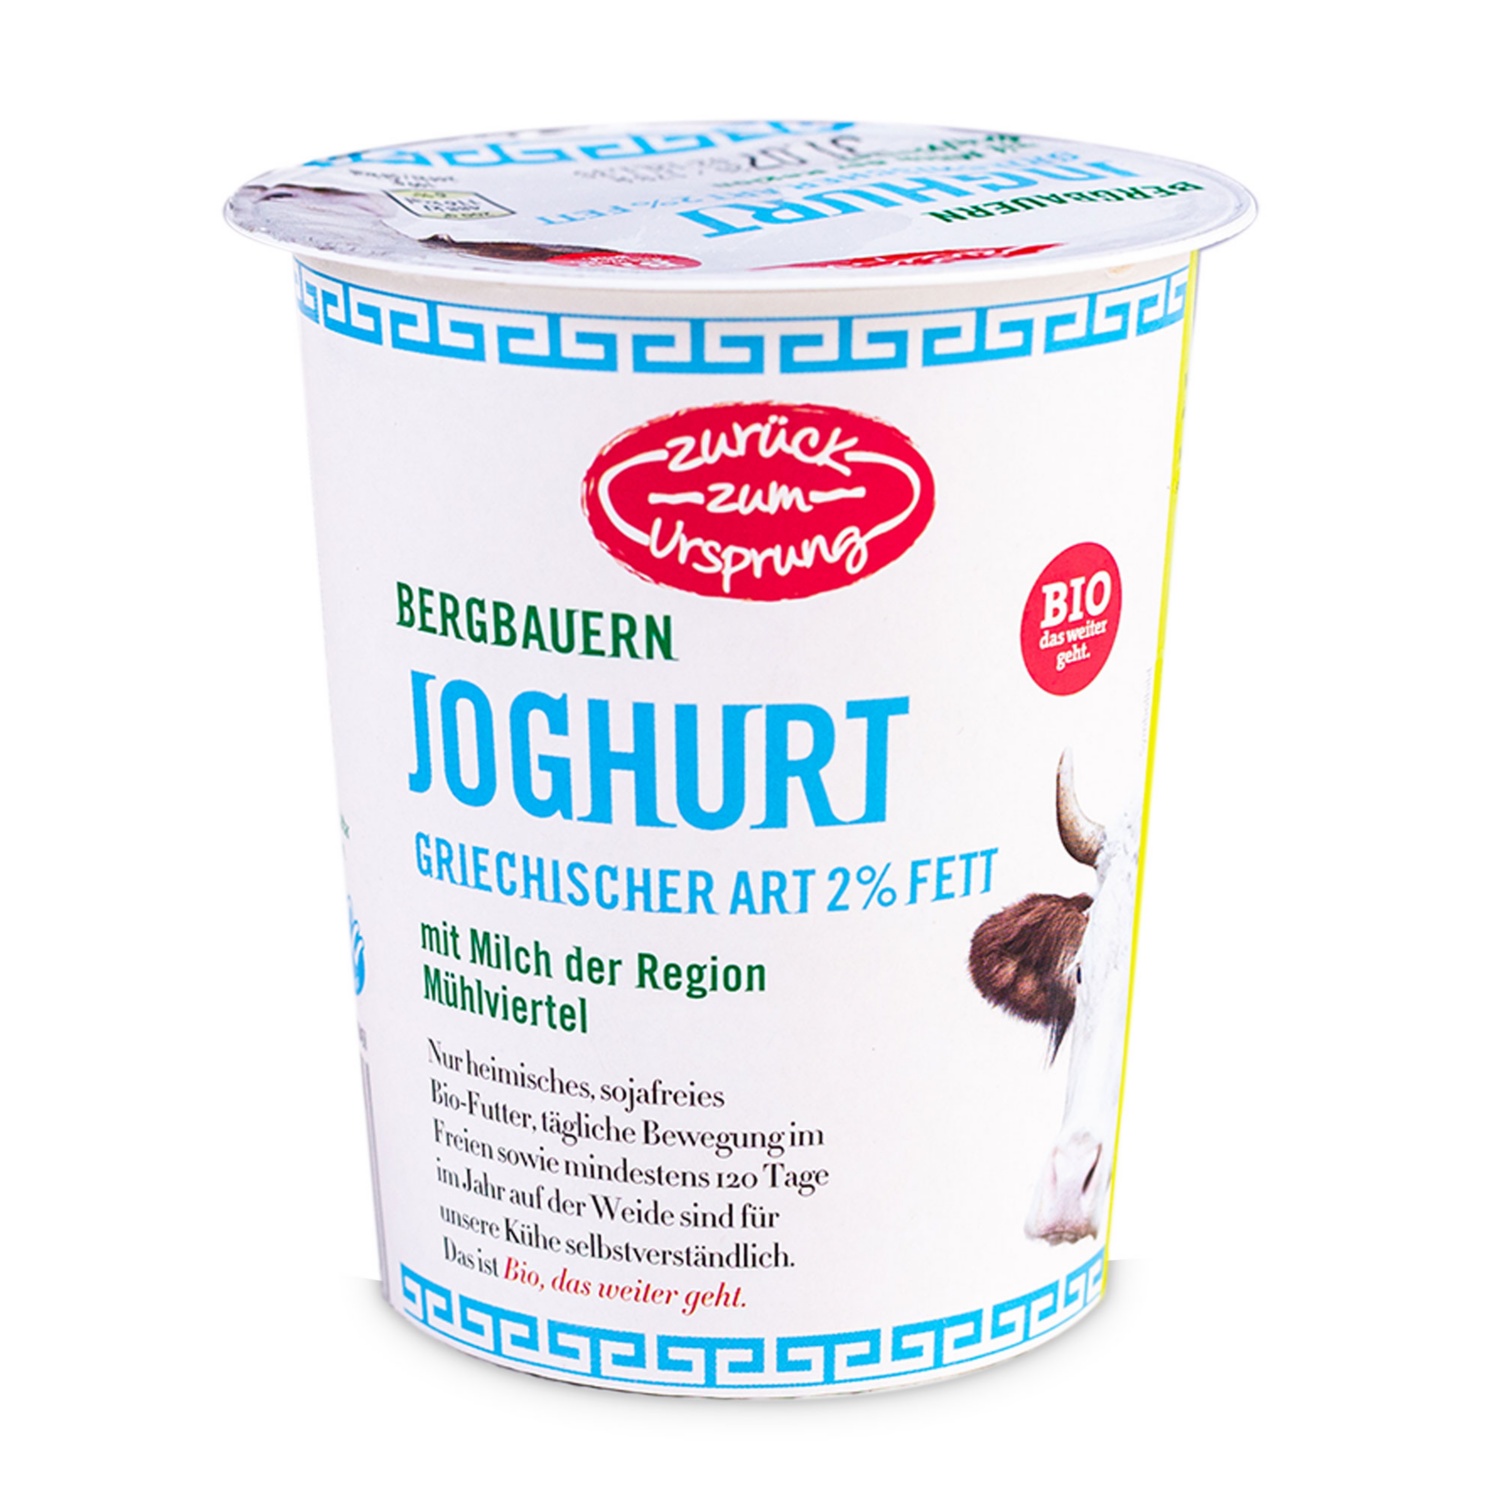 BIO-Joghurt griechische Art, 2% Fett